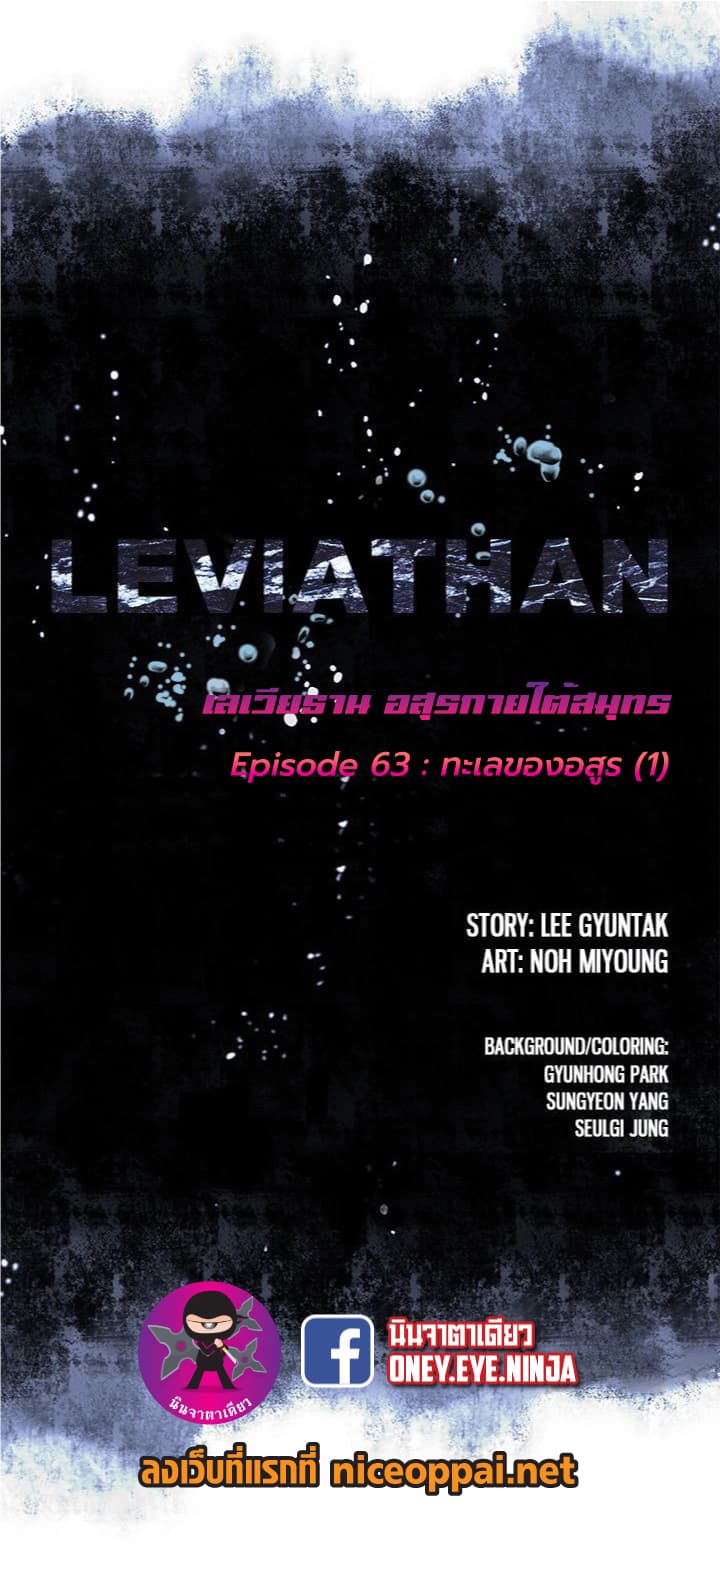 à¸­à¹ˆà¸²à¸™ Leviathan